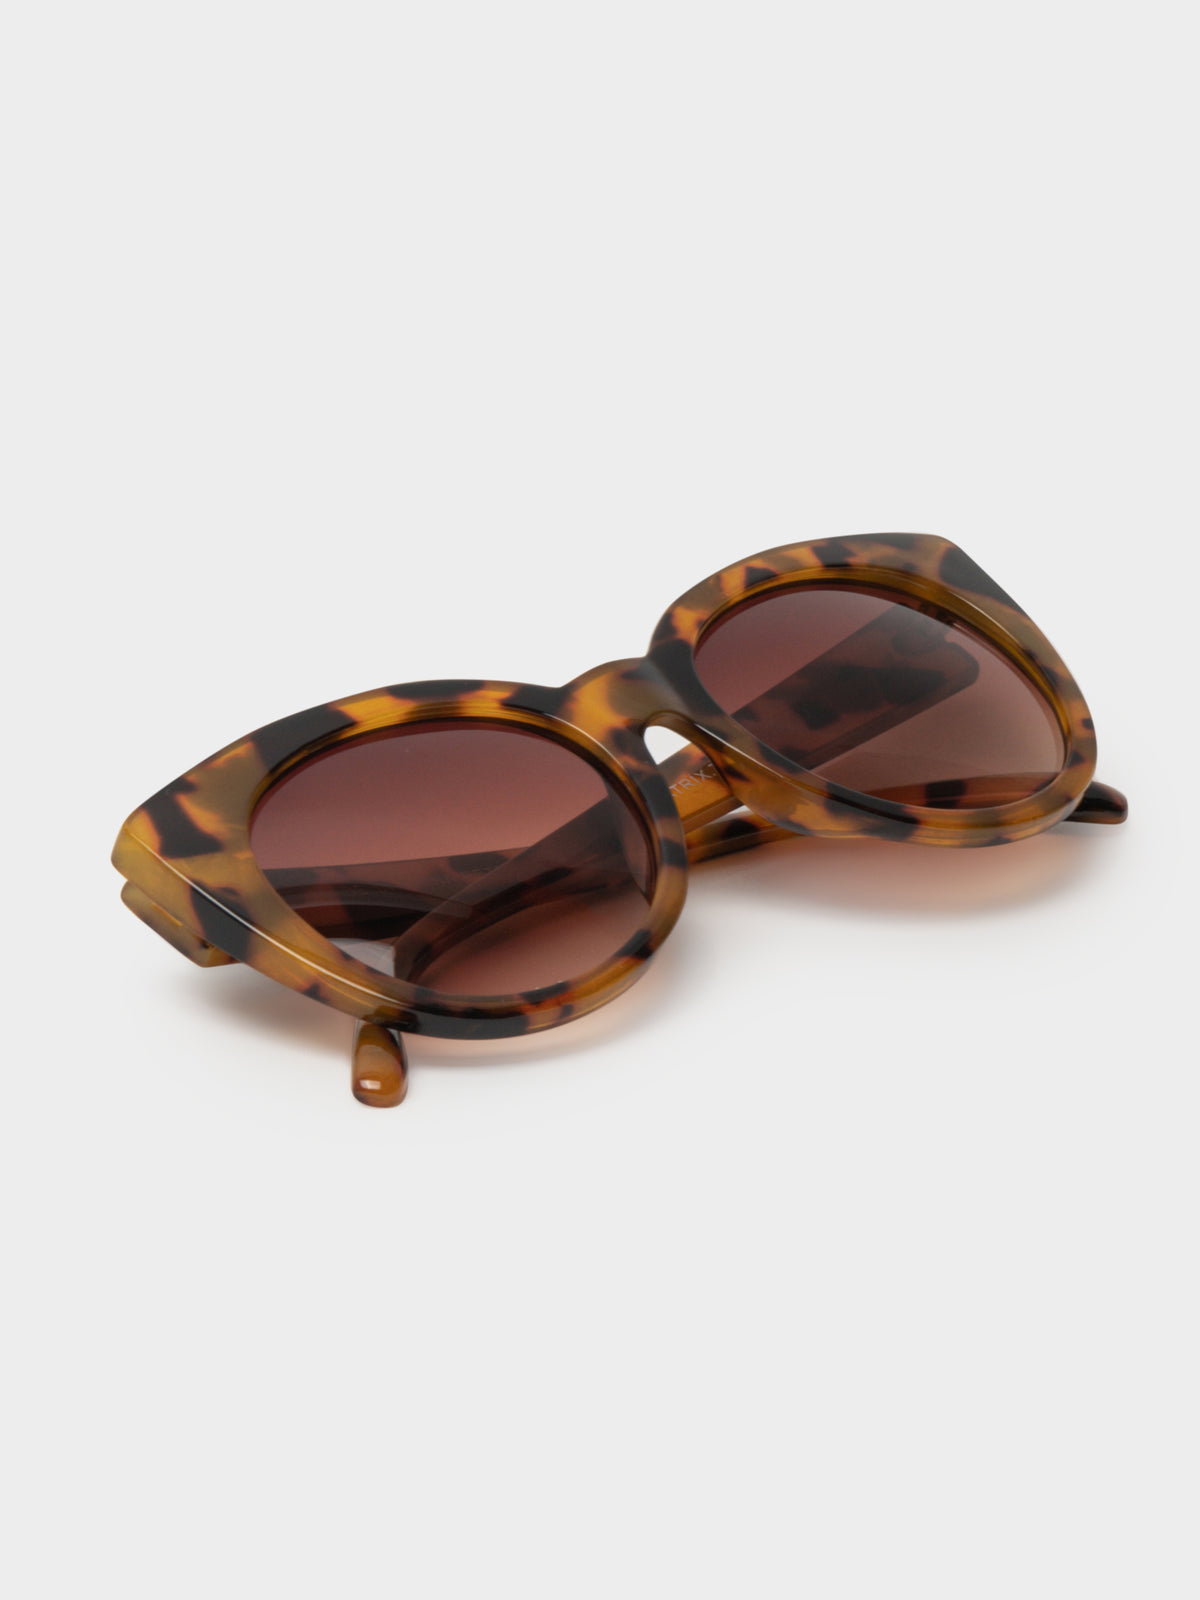 Beatrix Round Cat-Eye Sunglasses in Tortoiseshell